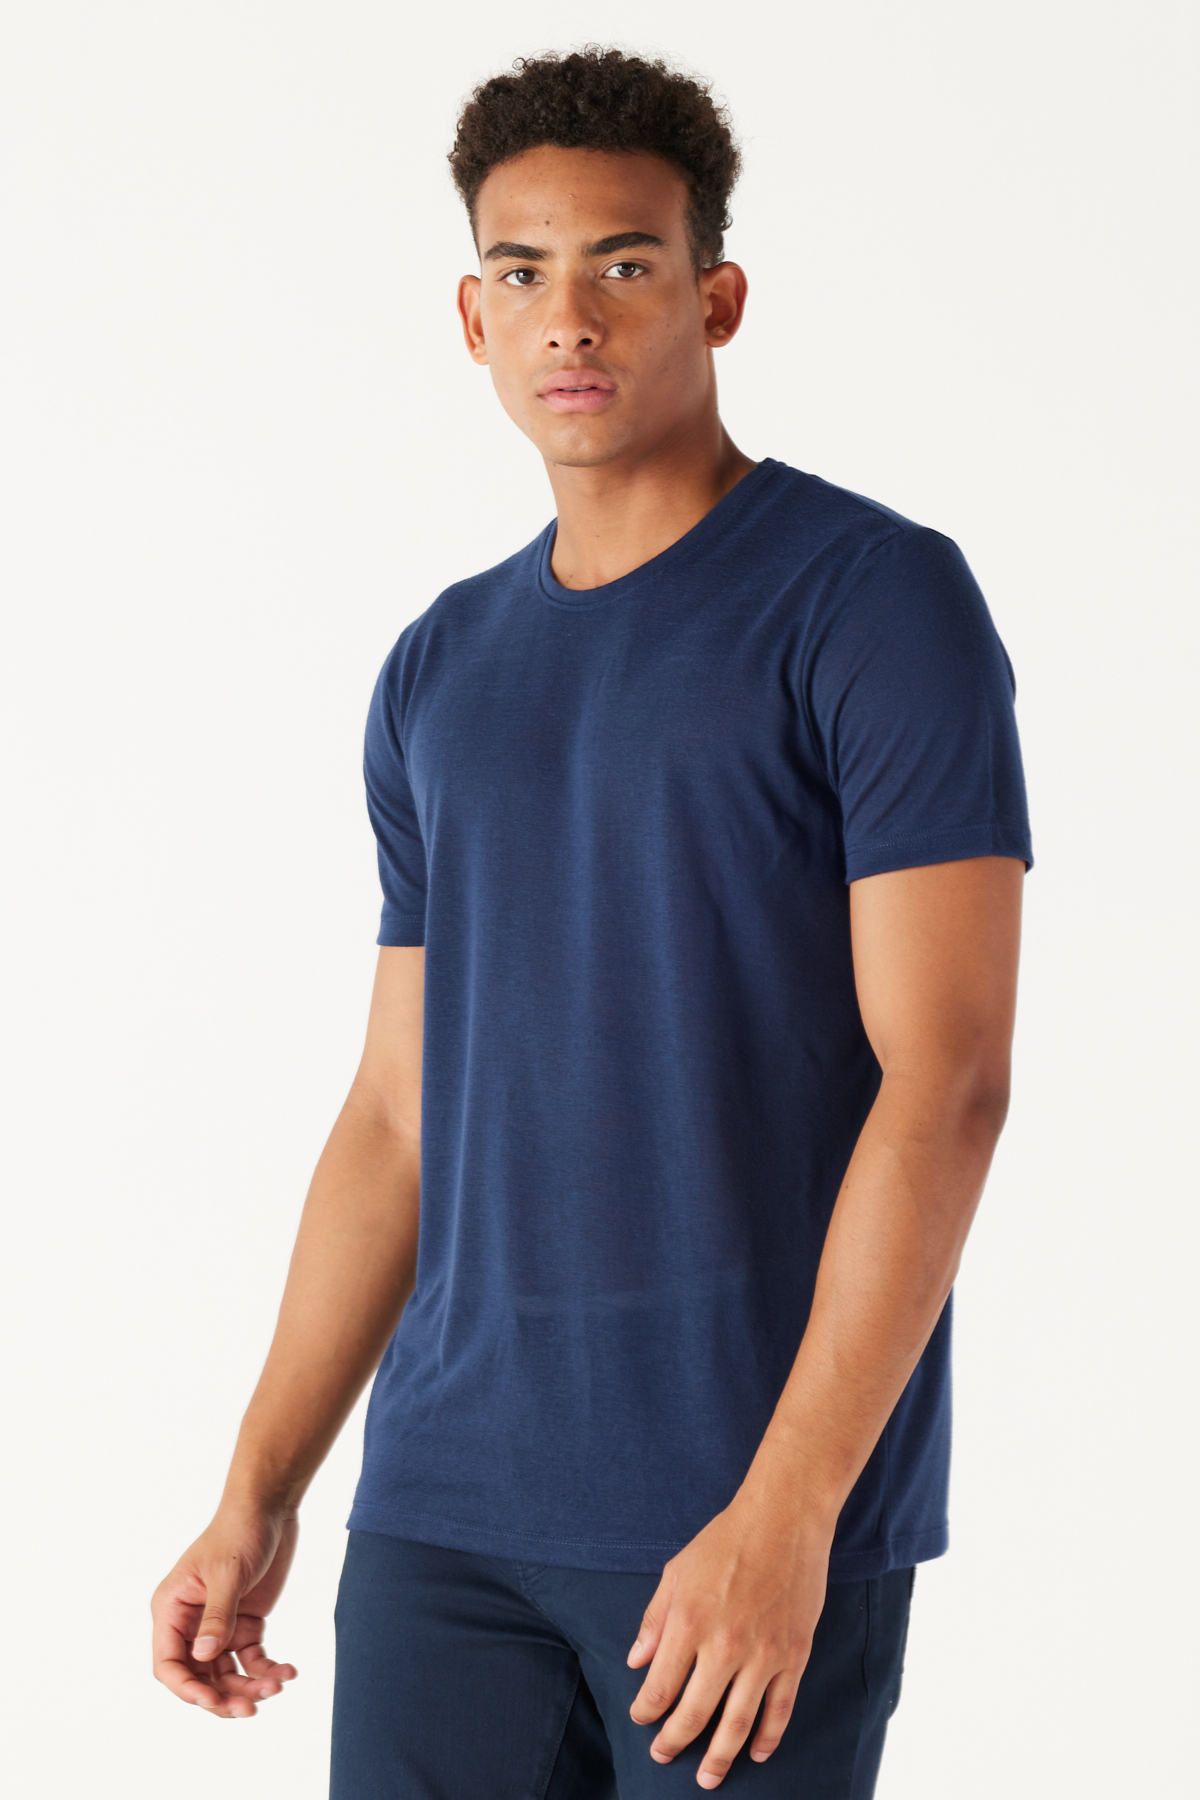 ALTINYILDIZ CLASSICS Pánske námornícke modré slim fit tričko Slim Fit Crew Neck s krátkym rukávom ľanové tričko.